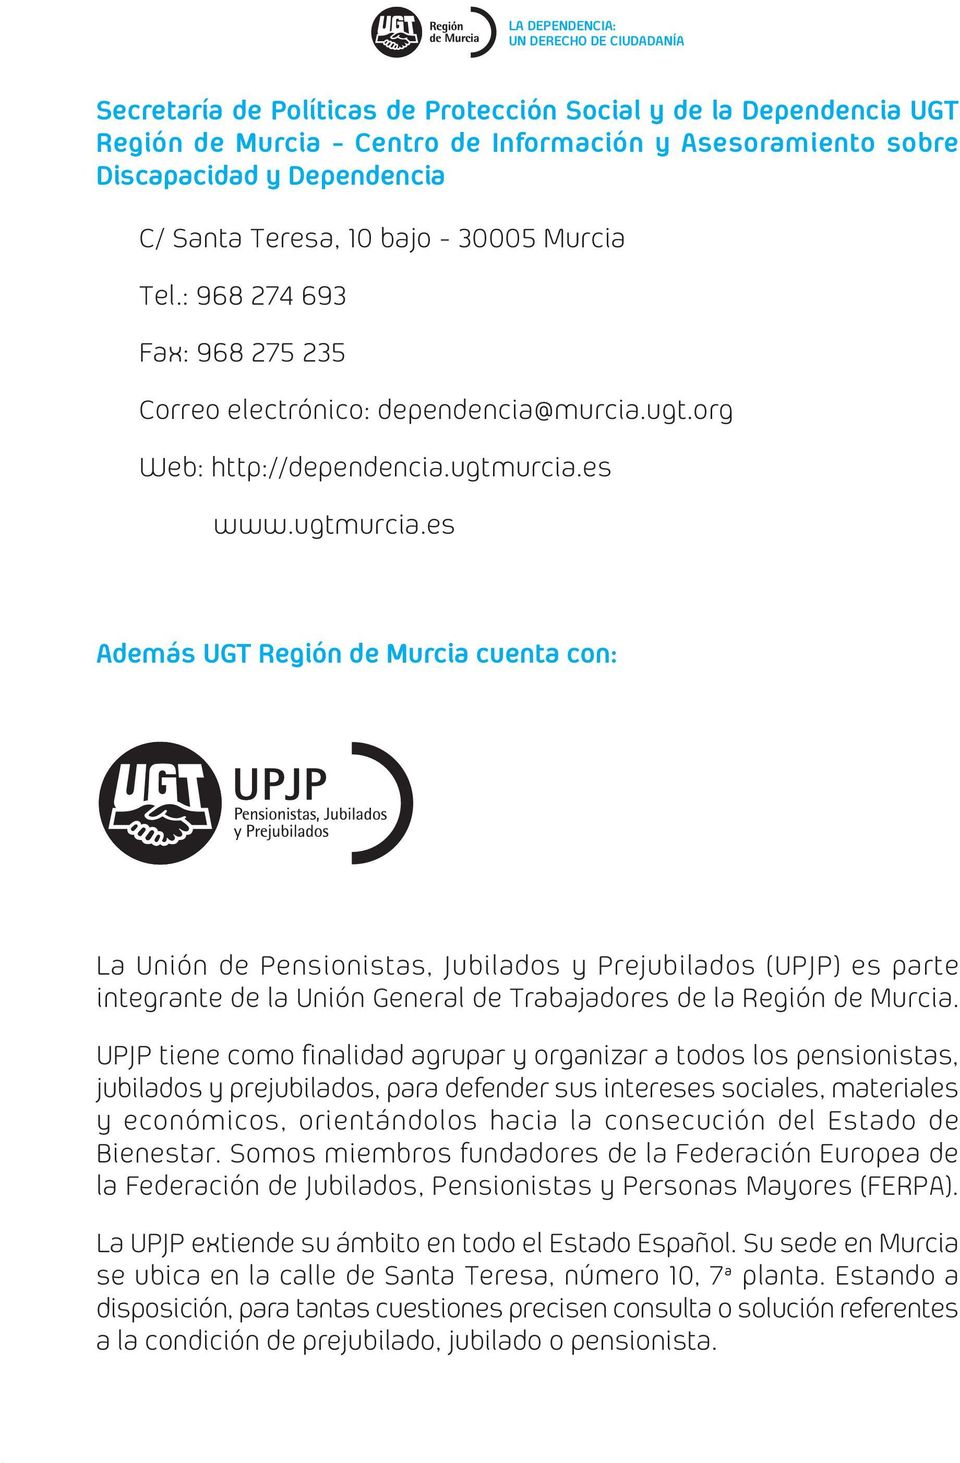 es www.ugtmurcia.es Además UGT Región de Murcia cuenta con: La Unión de Pensionistas, Jubilados y Prejubilados (UPJP) es parte integrante de la Unión General de Trabajadores de la Región de Murcia.